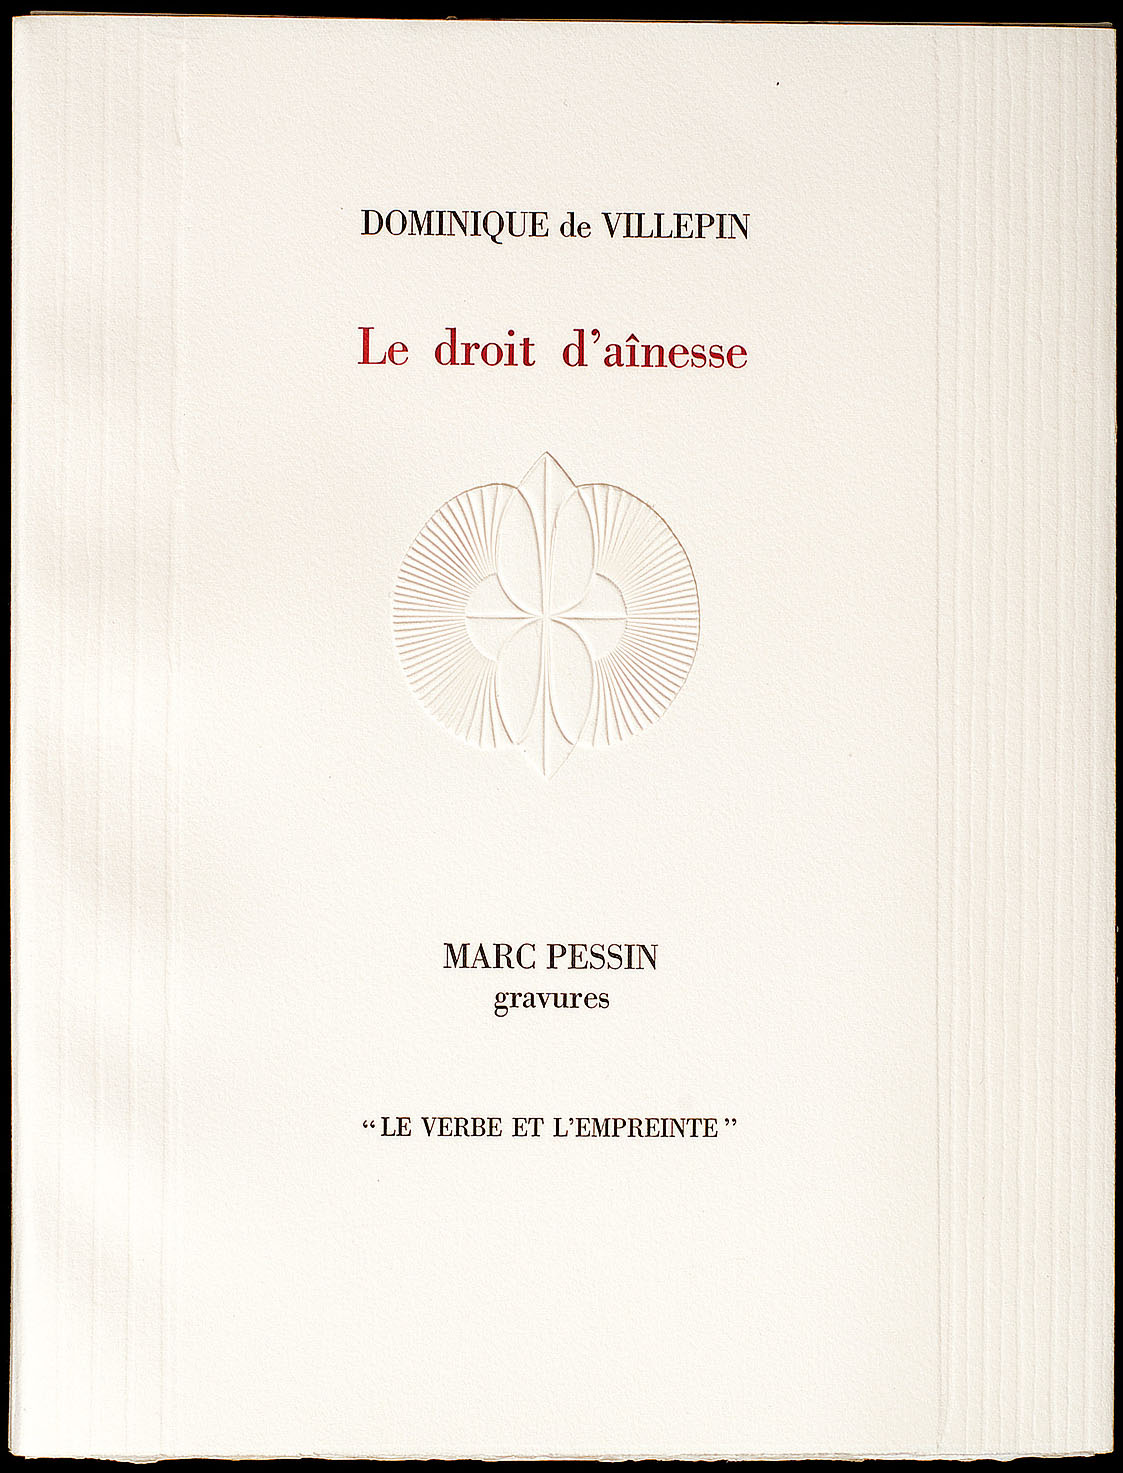 Couverture de "Le Droit d'aînesse" de Dominique de Villepin